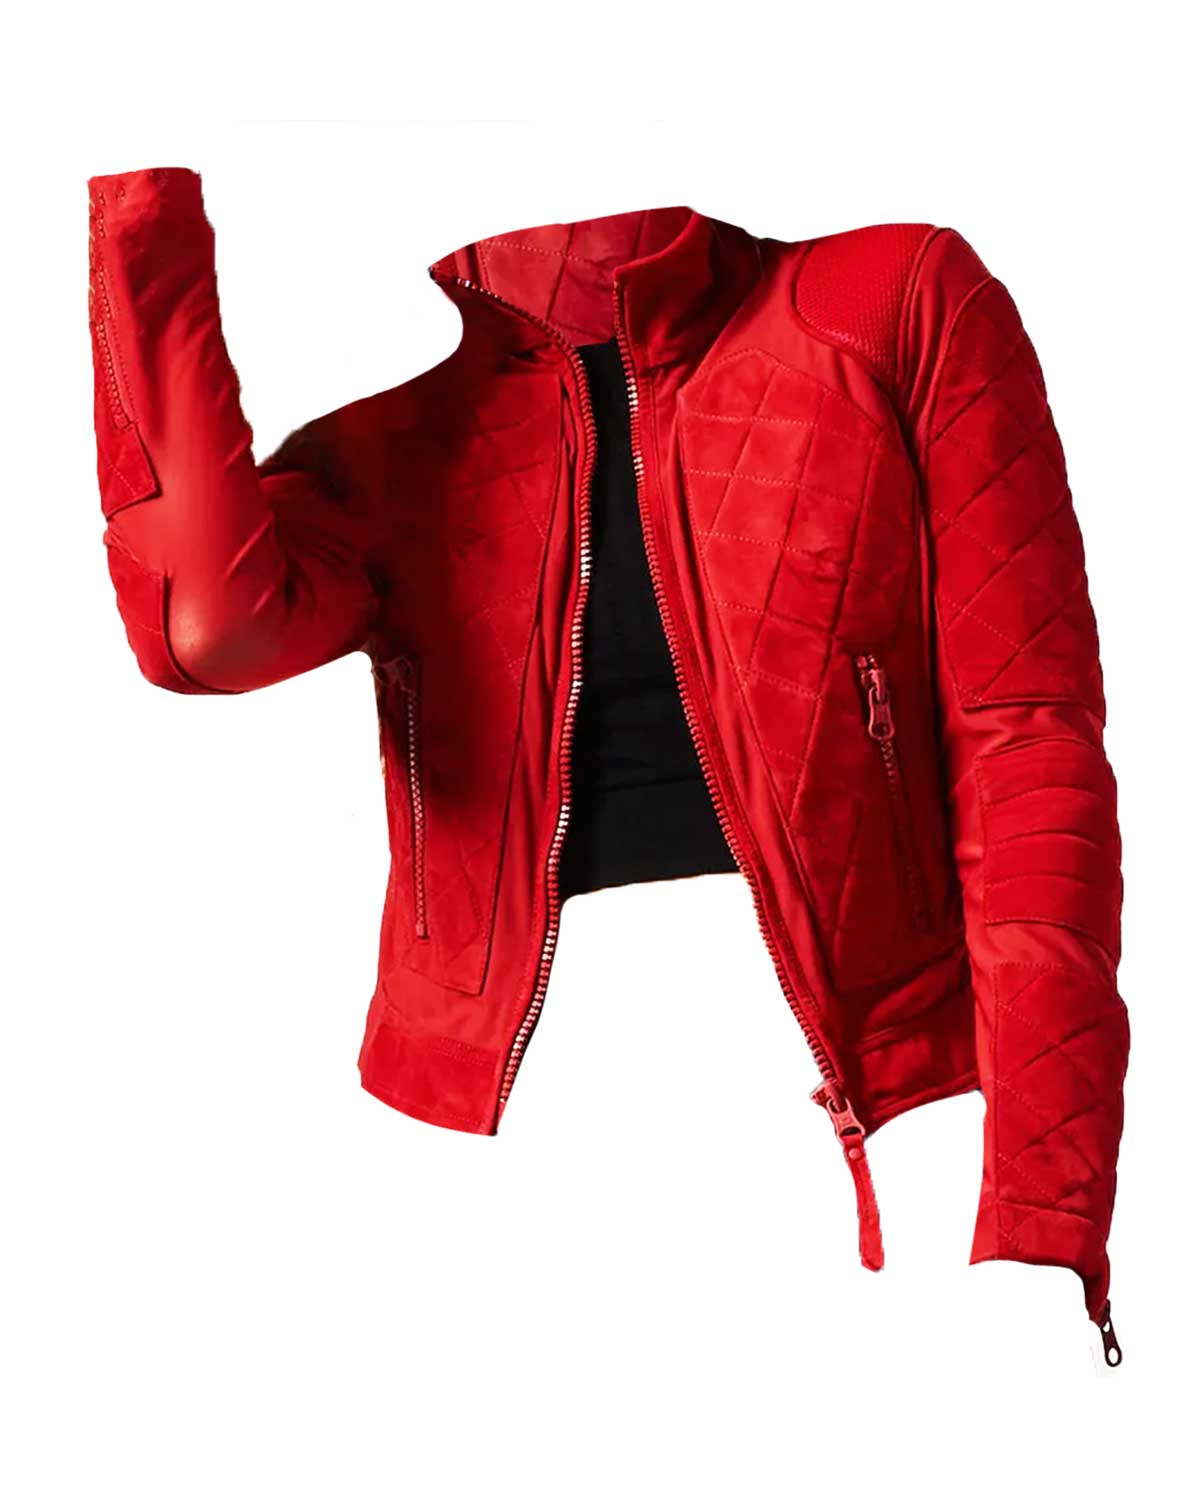 Bayley WWE Pamela Marinez Red Suede Jacket | Elite Jacket